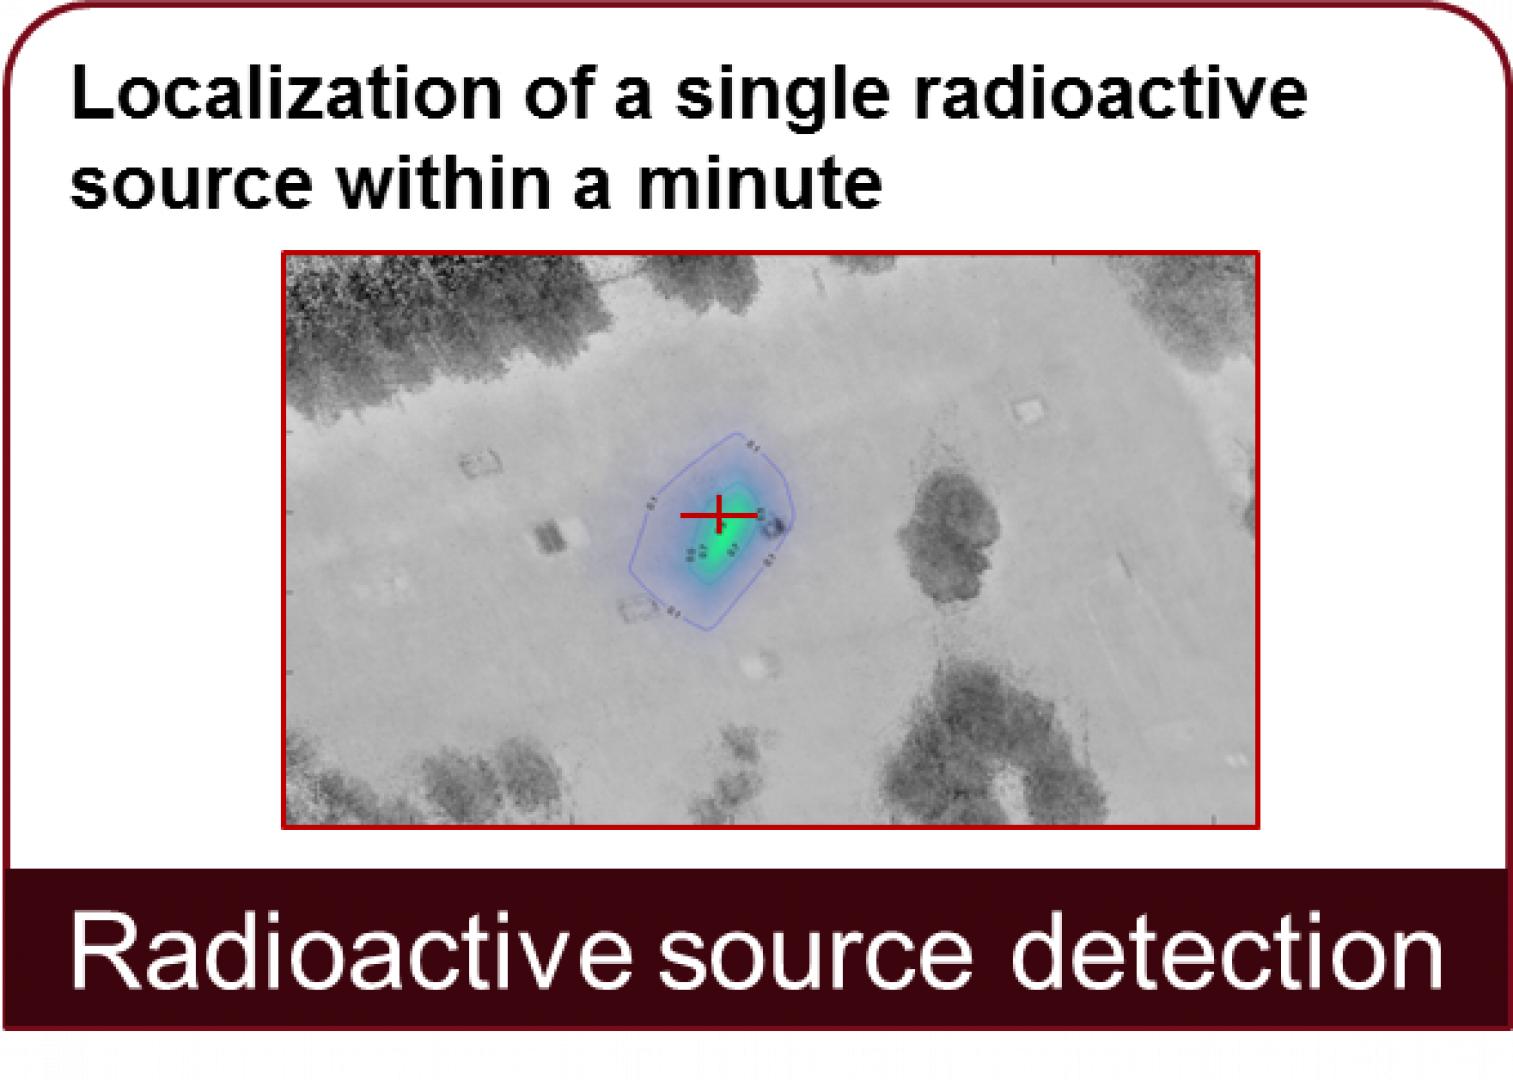 Detección de fuentes radiactivas: localización de una única fuente radiactiva en menos de un minuto